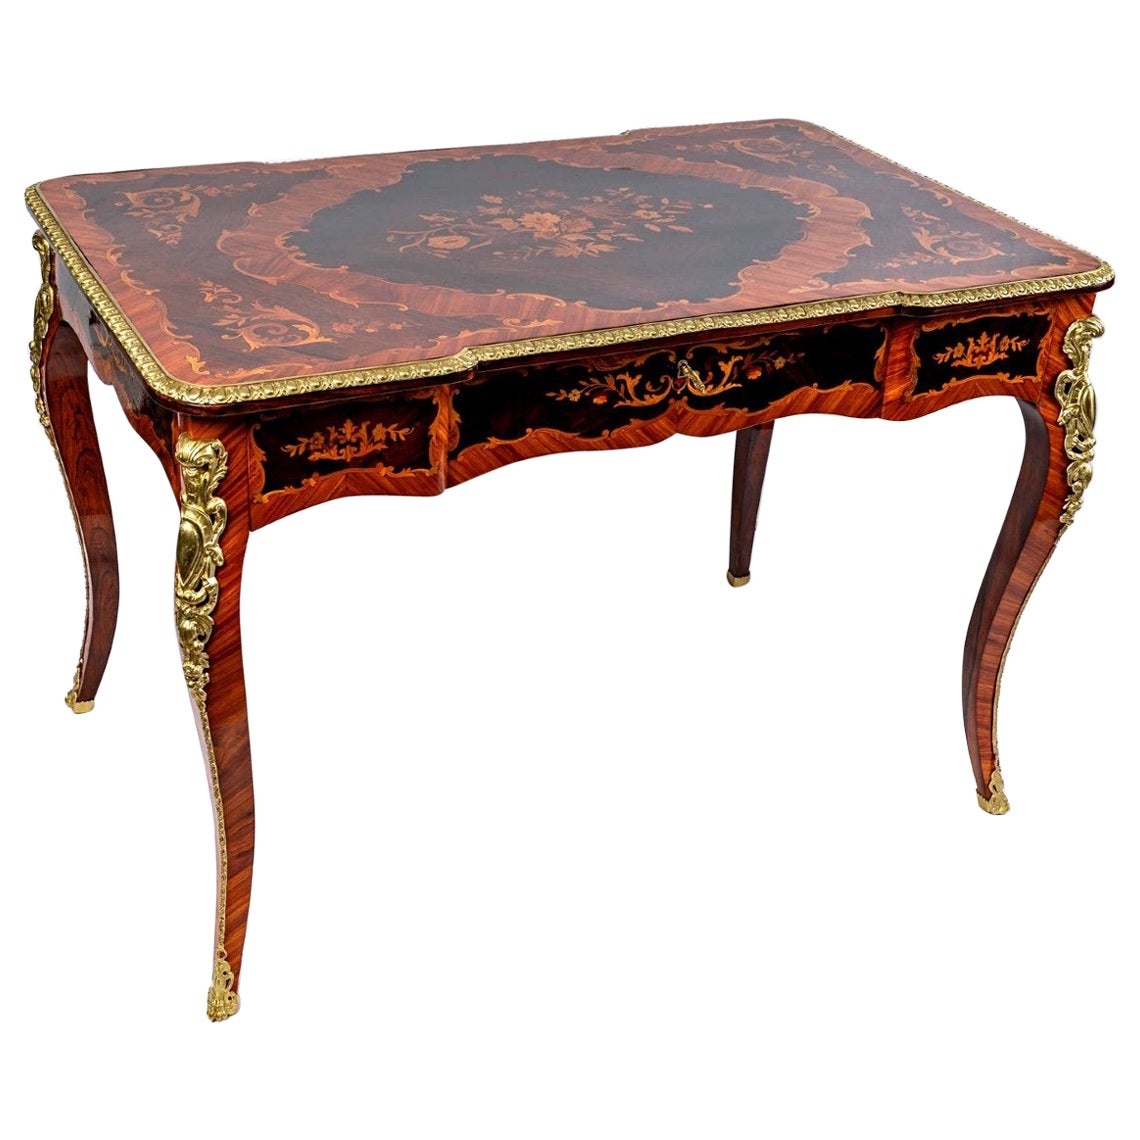 Prächtiger flacher Schreibtisch im Louis-XV-Stil mit Edelholz-Intarsien und goldenen Bronzen